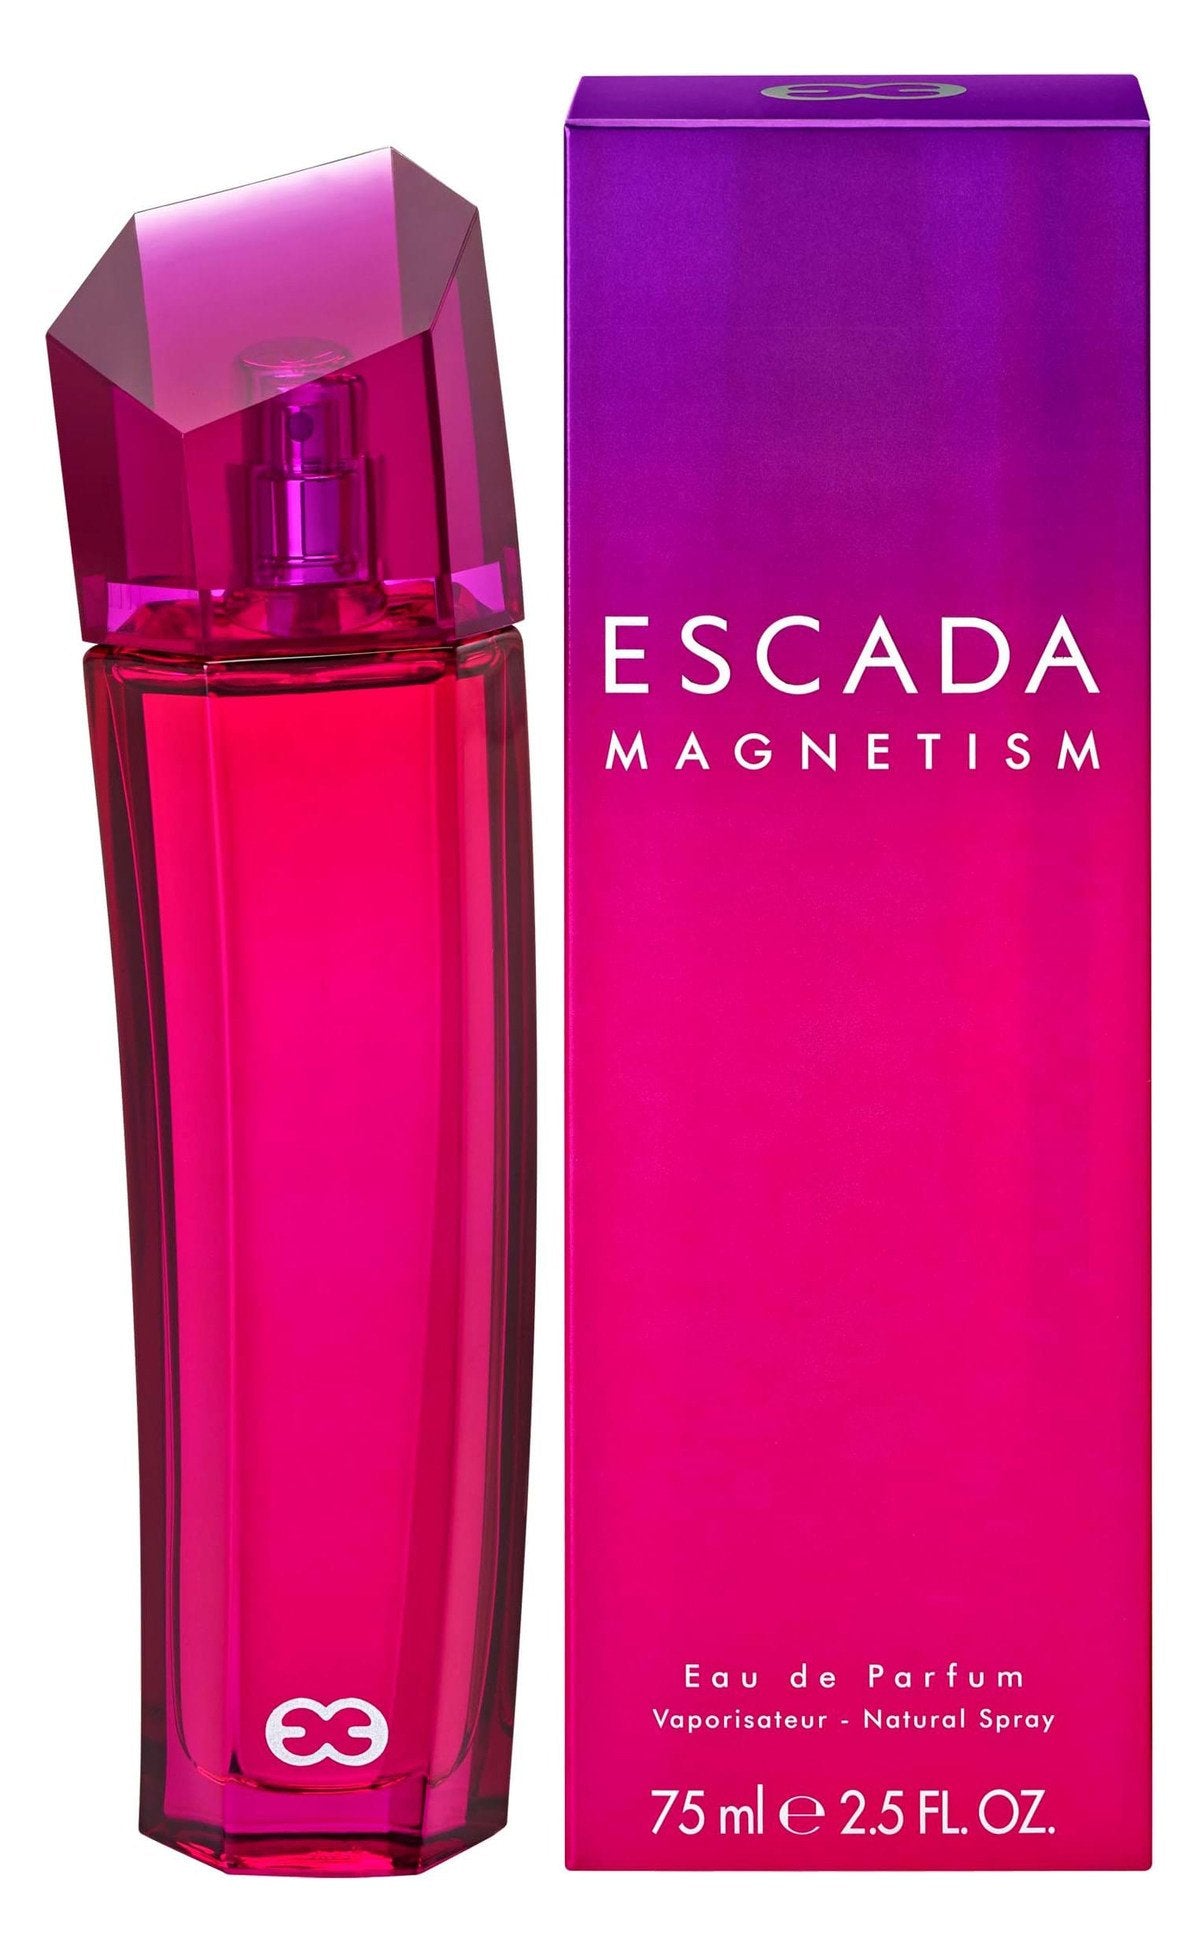 Escada Magnetism for women - Eau de parfum - 75ml